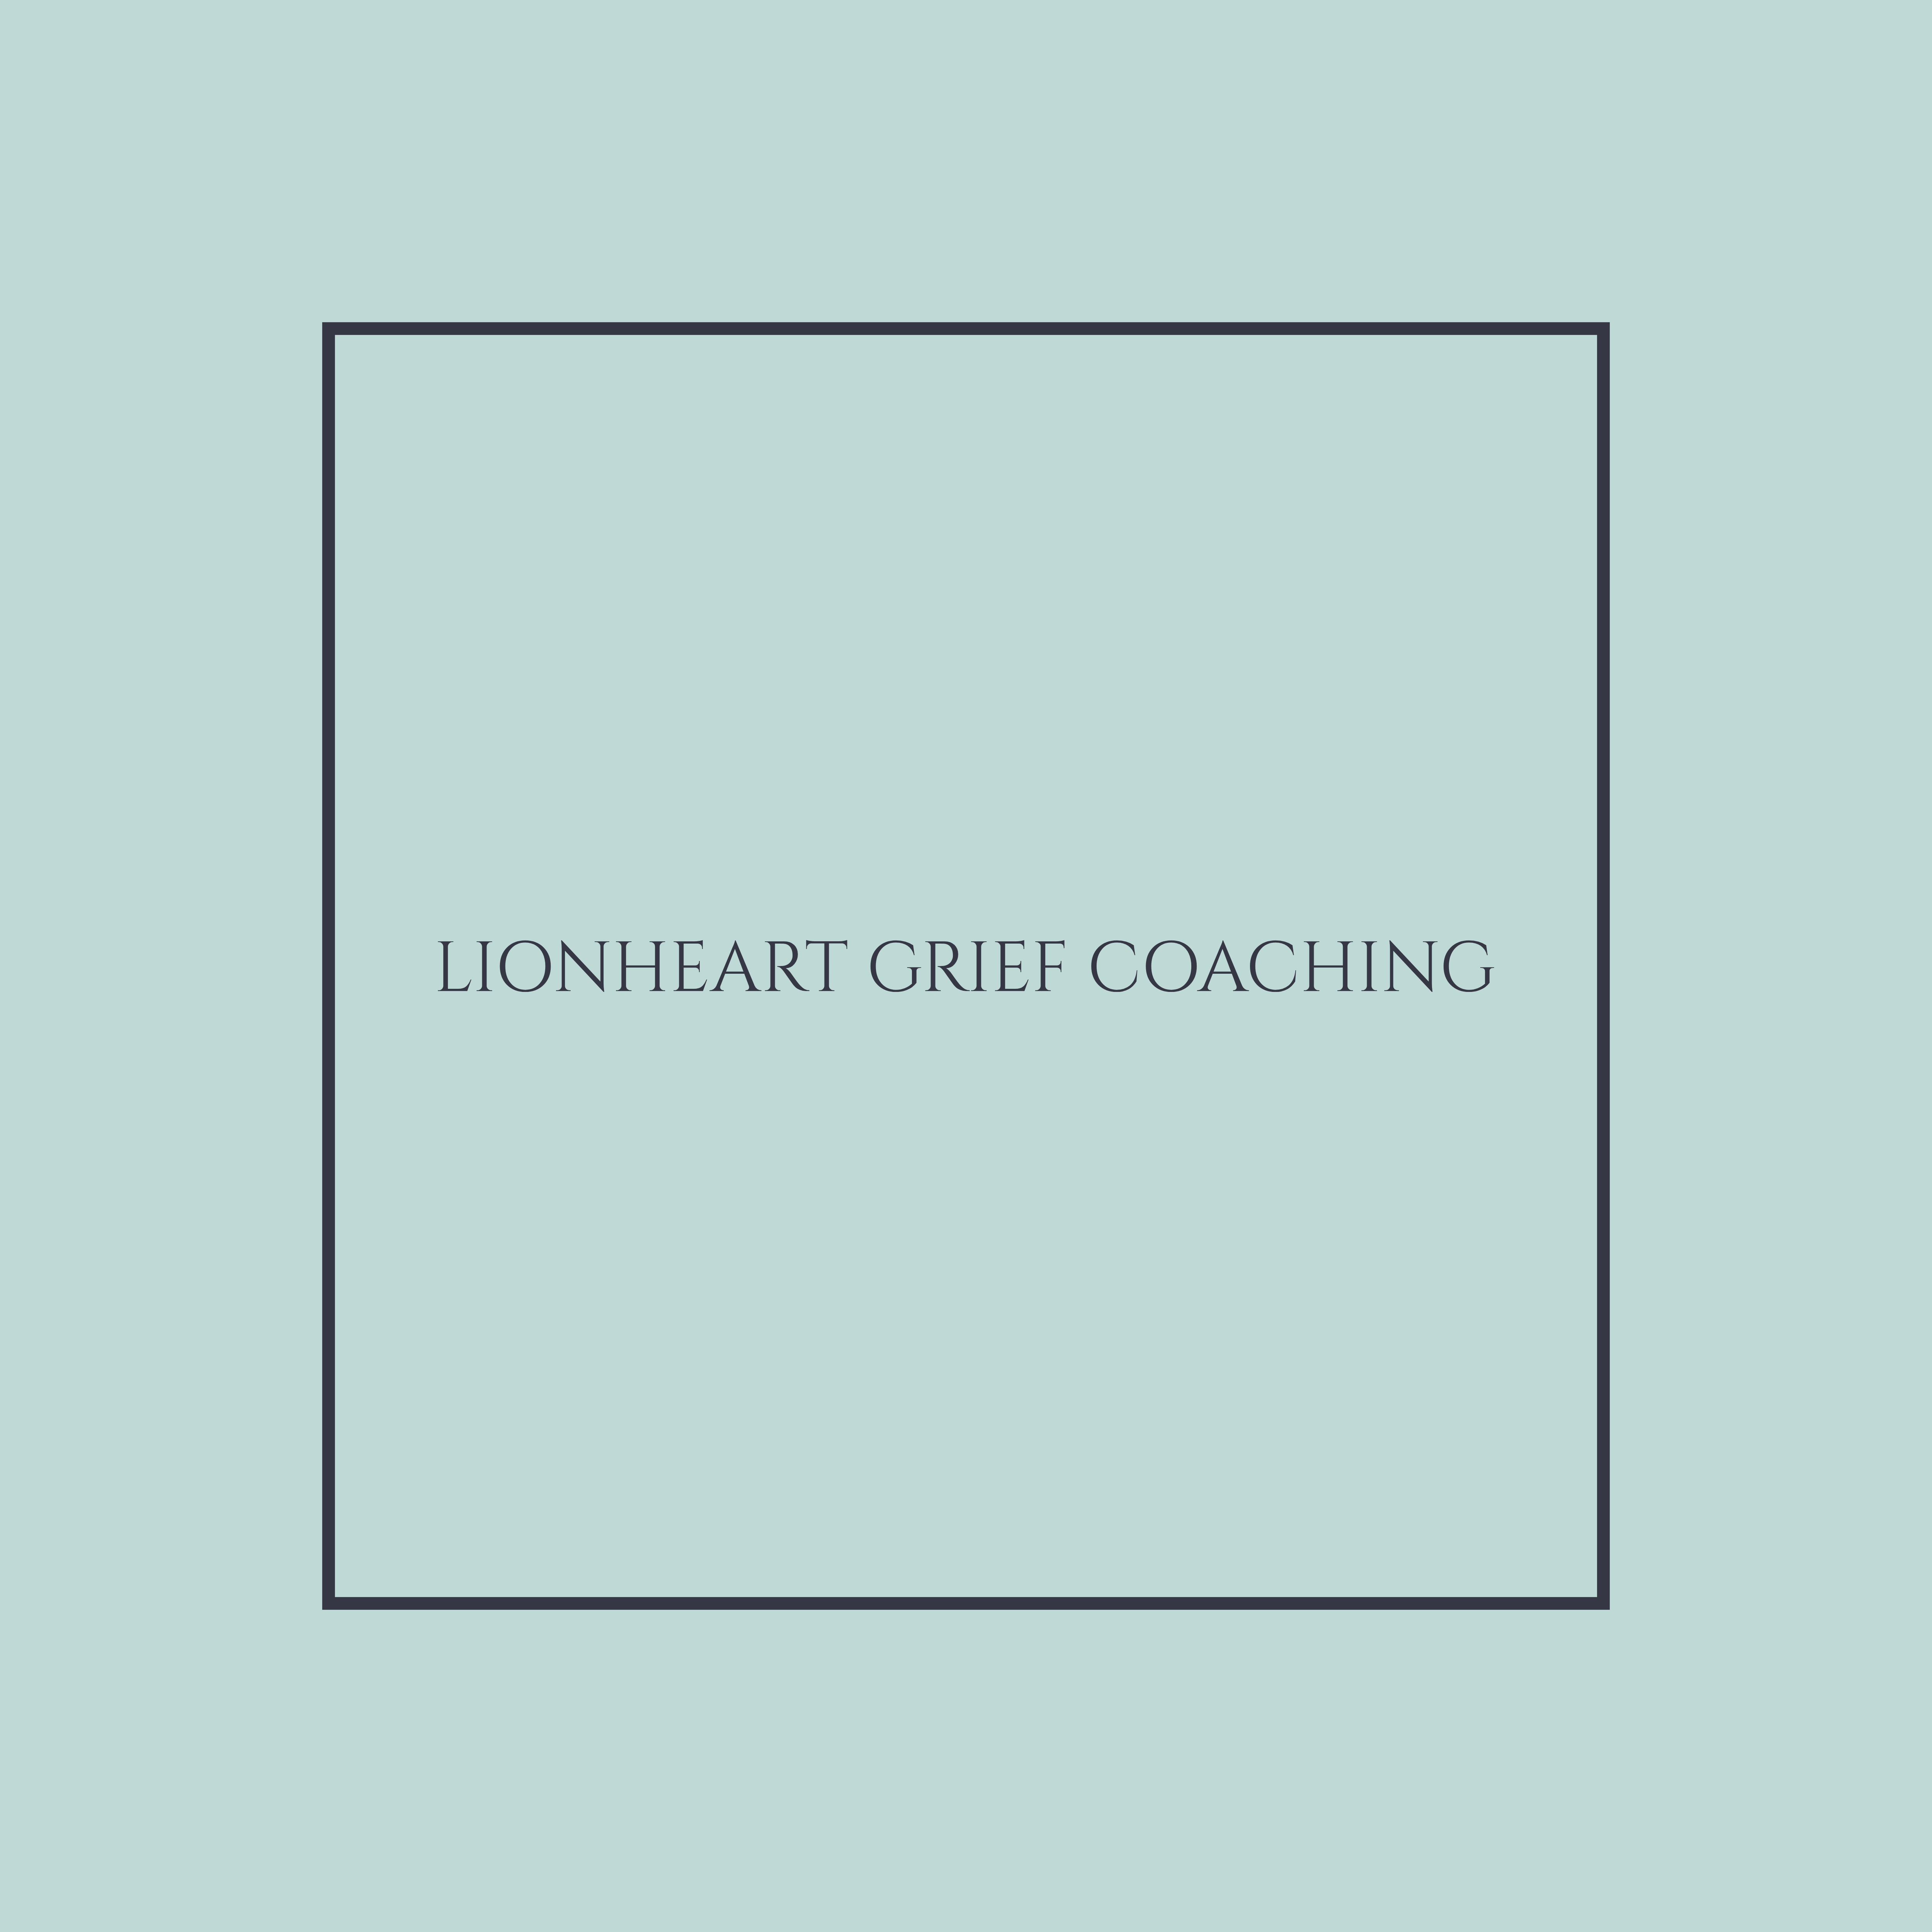 Lionheart Grief Coaching